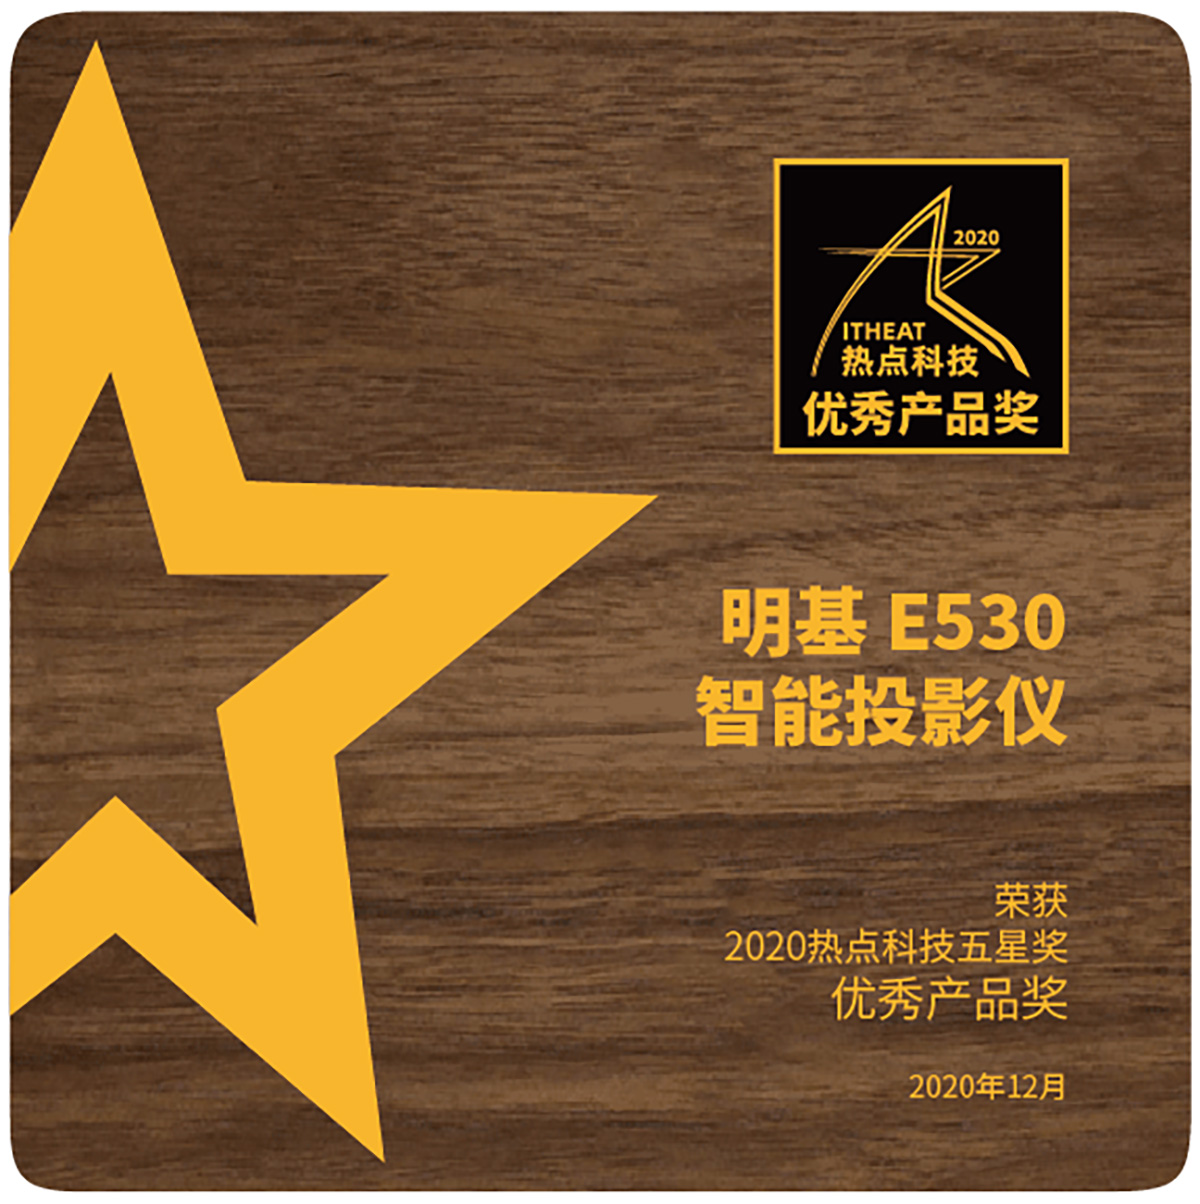 明基E592、E530智能投影仪于2020五星奖颁奖盛典中荣获“年度优秀产品奖”